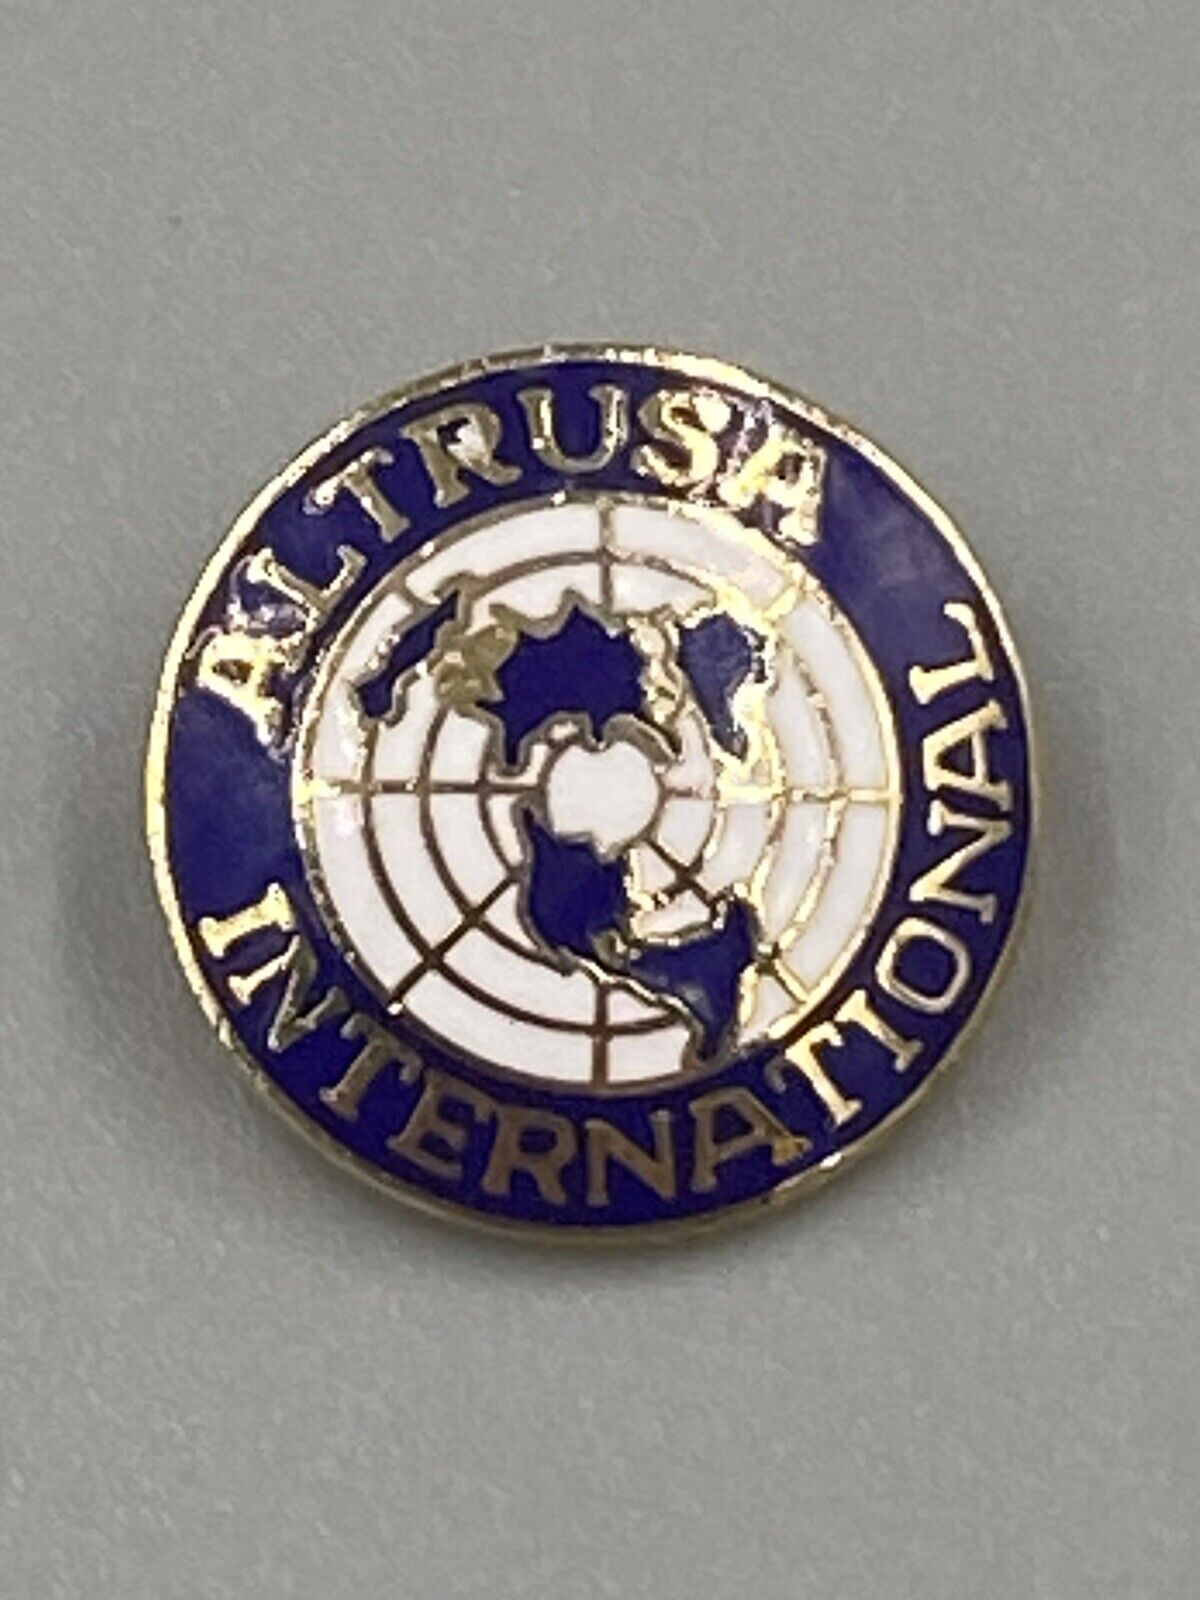 Vintage Altrusa International Lapel Pin Brooch